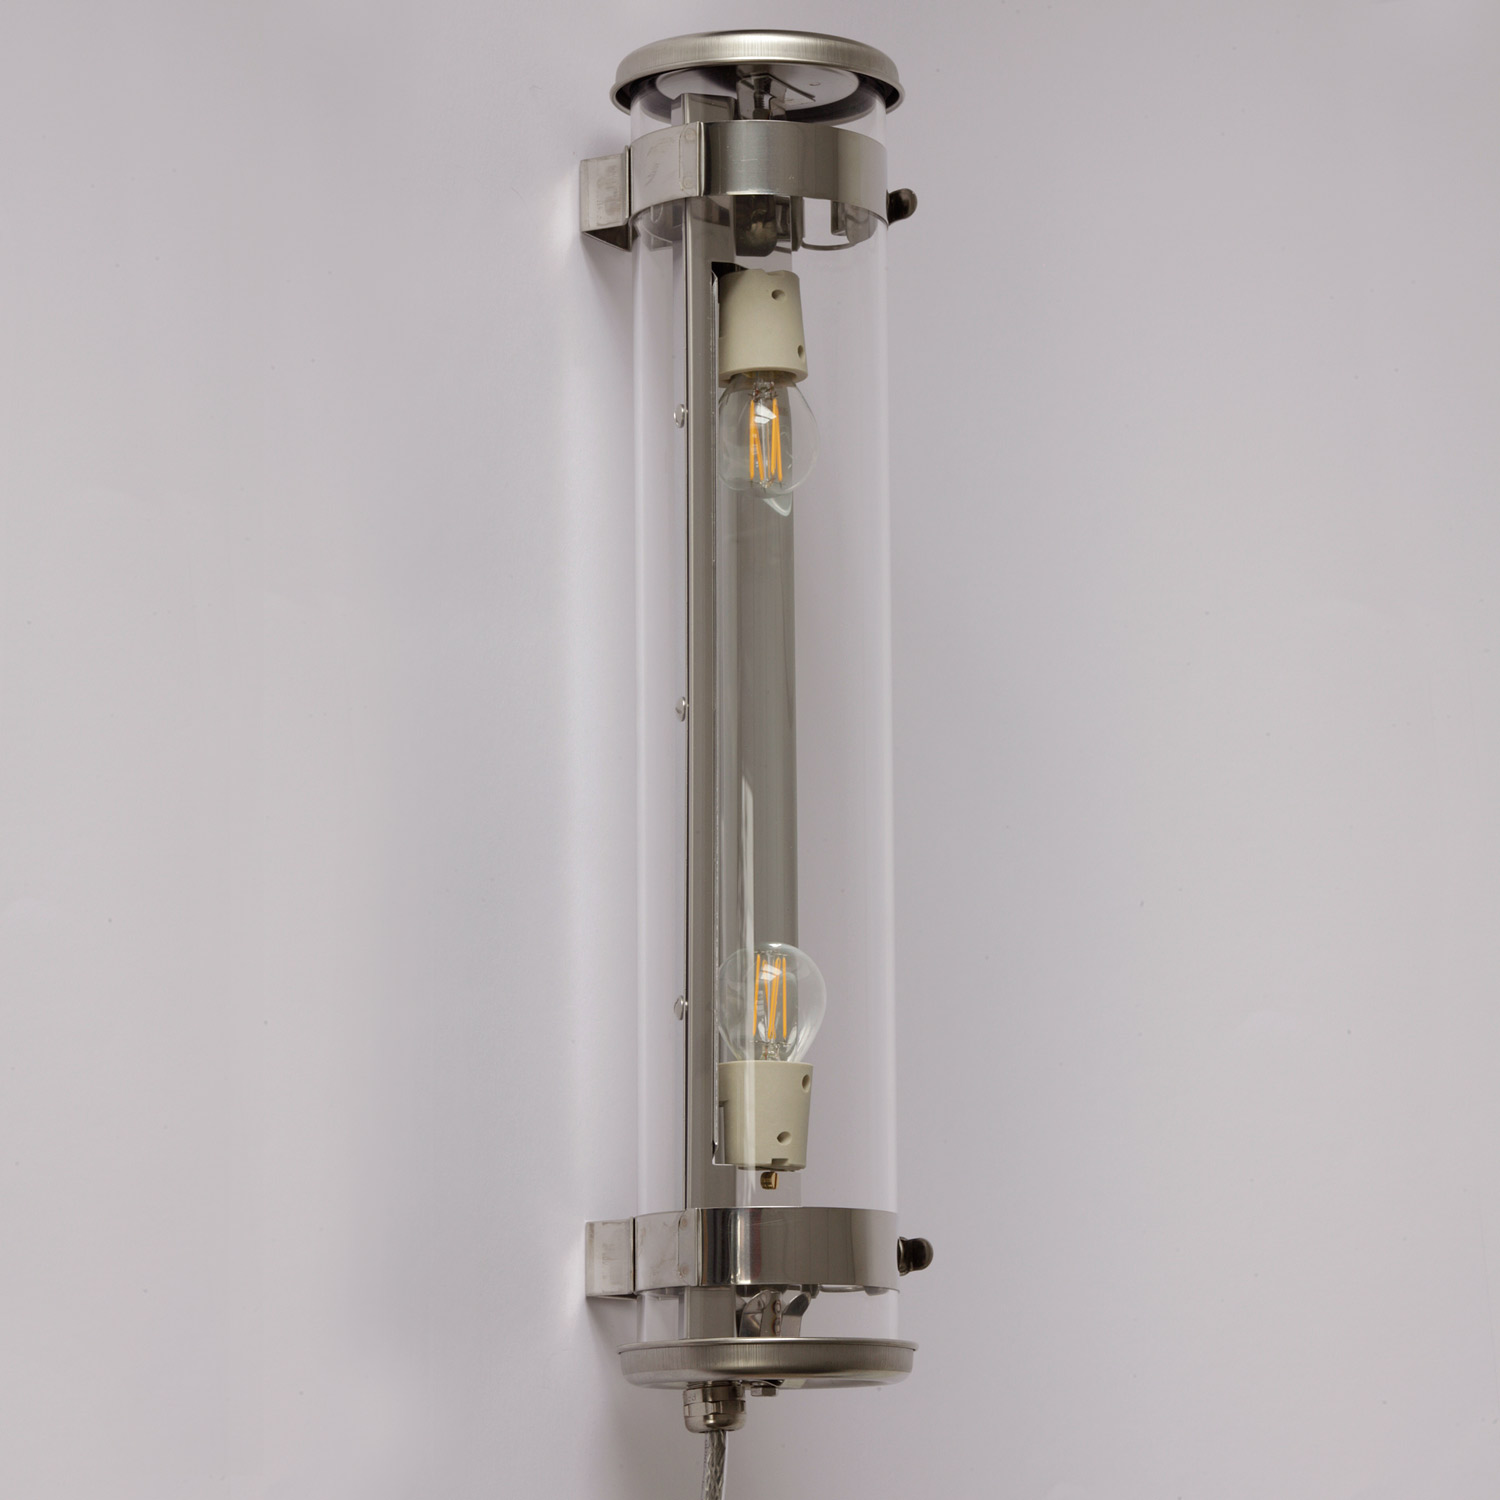 Glasröhren-Leuchte MUSSET, Ø 10 cm: Die Glasröhren-Leuchte in Wandmontage mit Reflektor in silber/Edel-Stahl, ohne Gewebe-Abschirmung